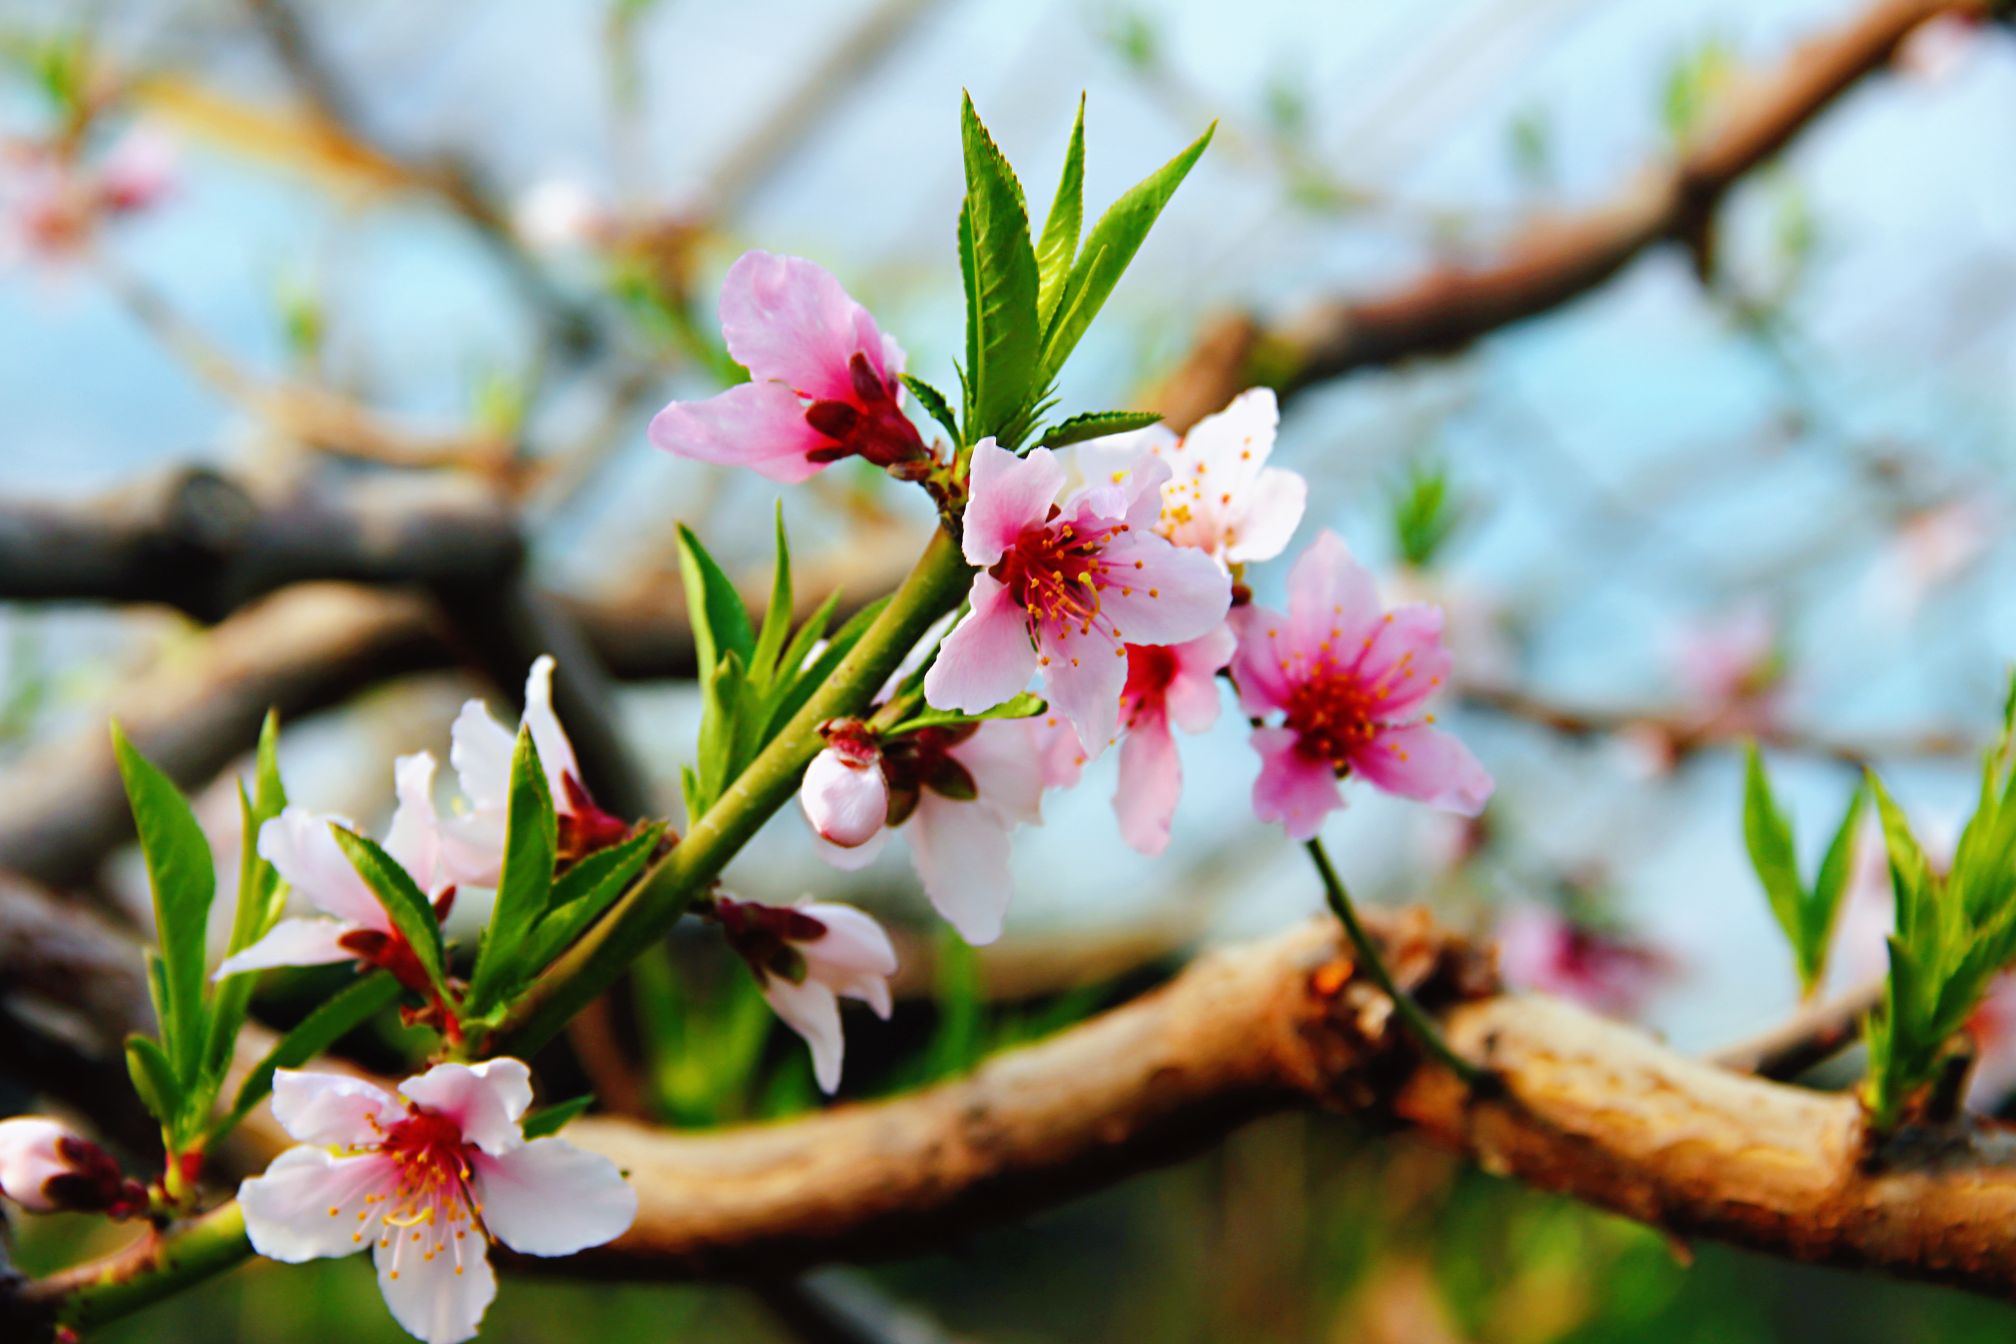 粉嘟嘟的桃花正立在枝头向人们展示它的风采,一阵春风,片片花瓣纷飞